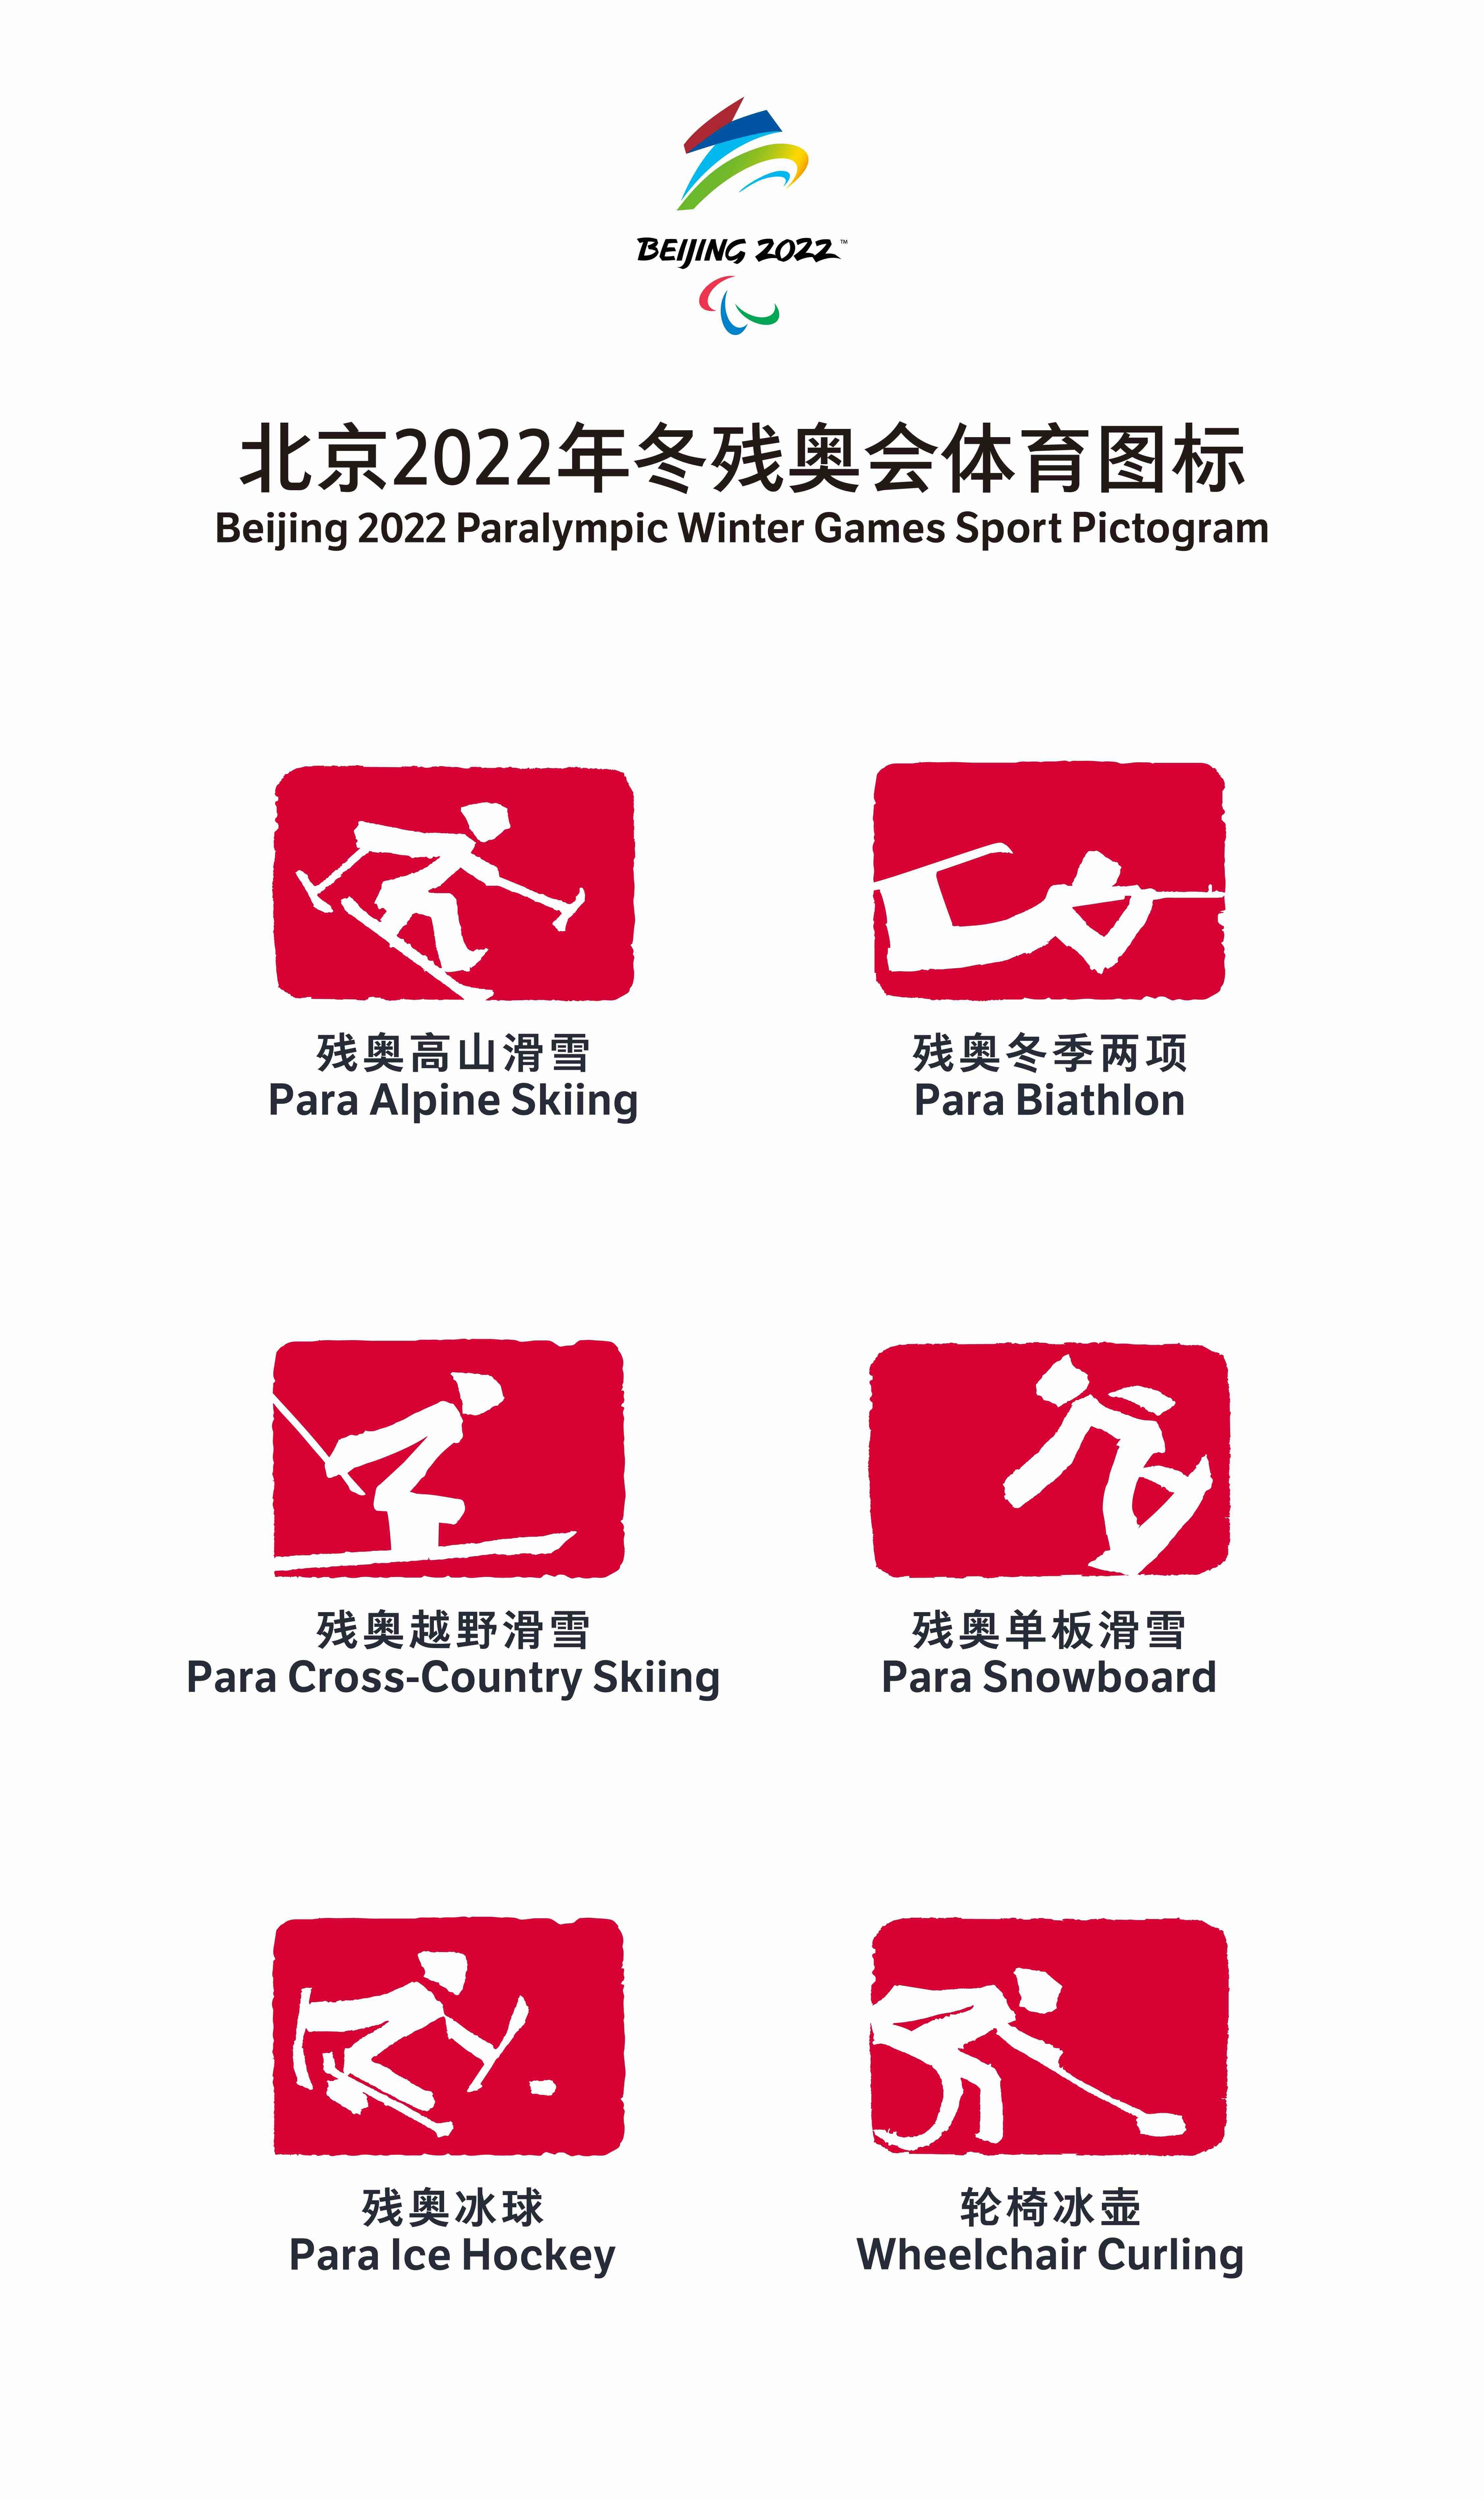 77秒丨中国范儿十足!北京2022冬奥会和冬残奥会体育图标发布